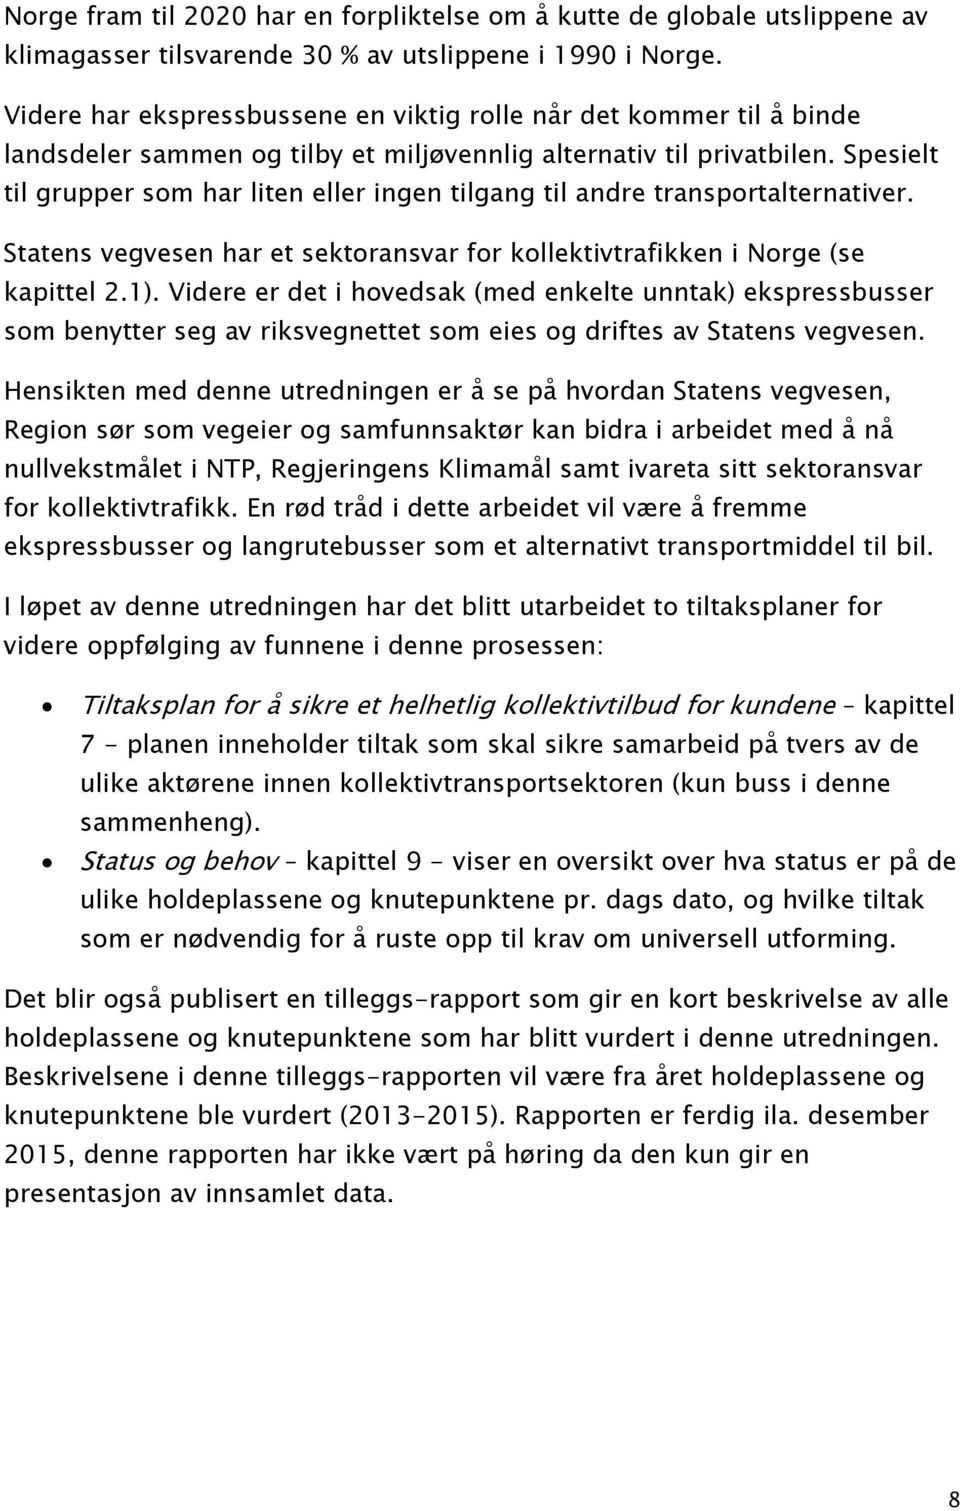 Spesielt til grupper som har liten eller ingen tilgang til andre transportalternativer. Statens vegvesen har et sektoransvar for kollektivtrafikken i Norge (se kapittel 2.1).